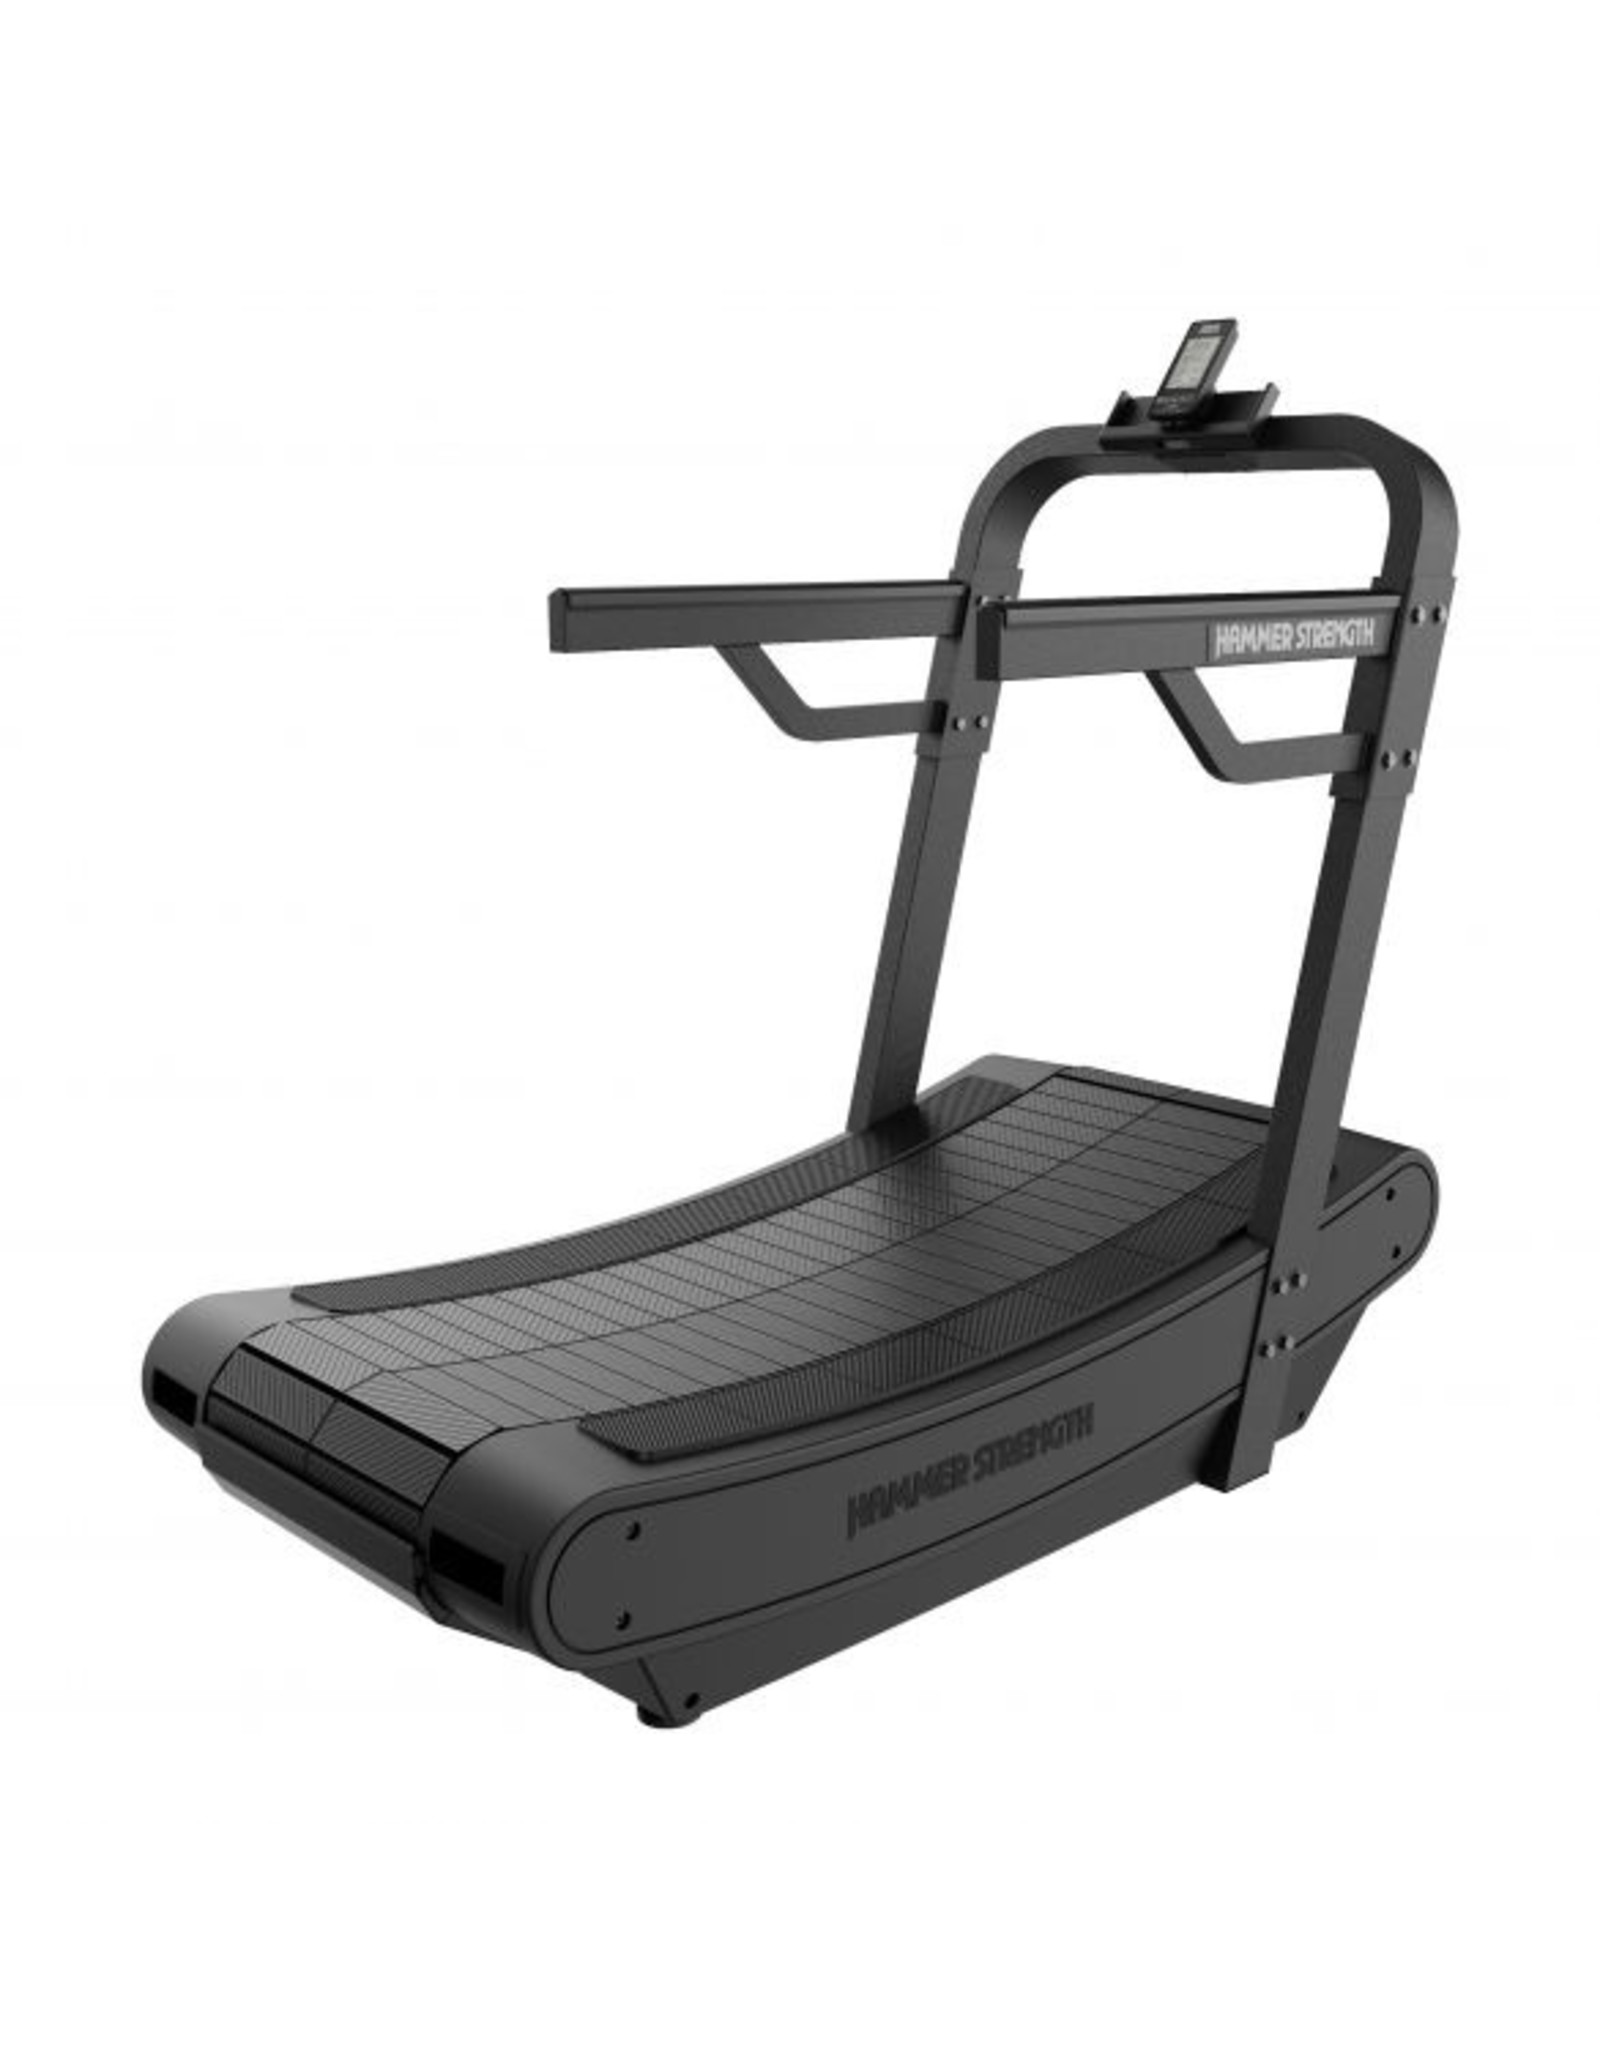 Life Fitness Hammer Strenght treadmill